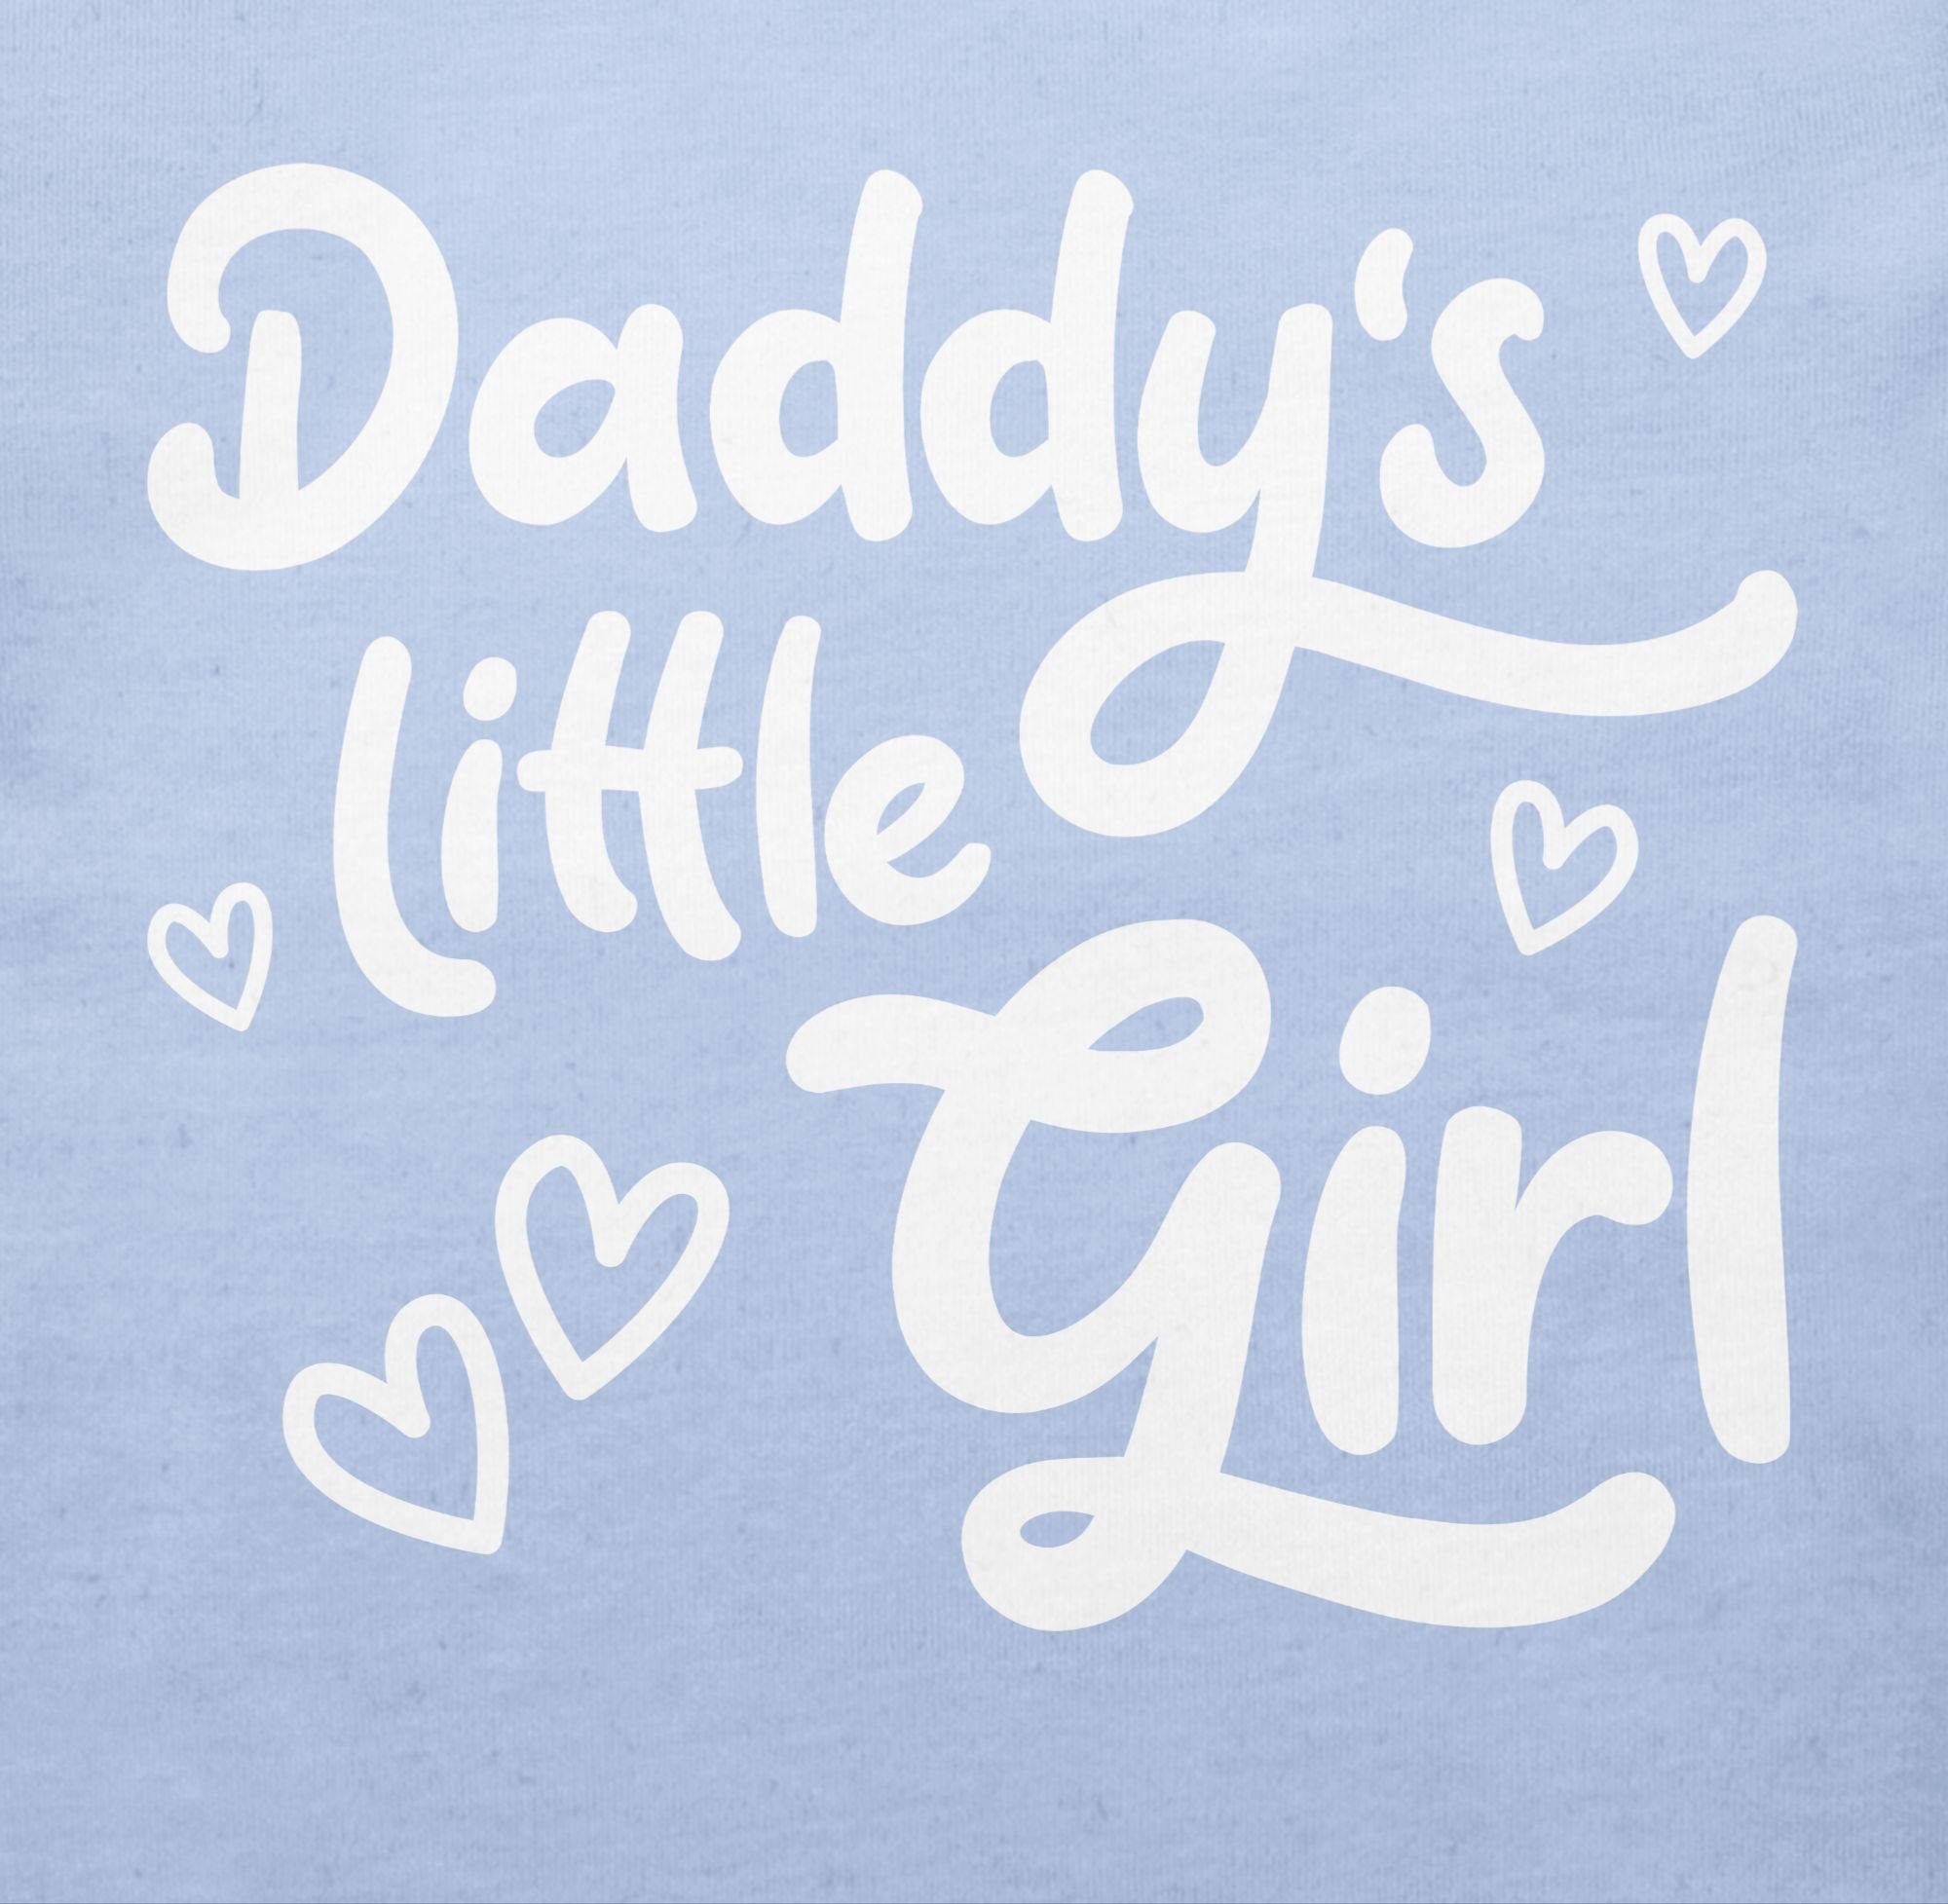 Vatertag Shirtracer Daddy's weiß T-Shirt 3 Girl Babyblau Geschenk süß little Baby